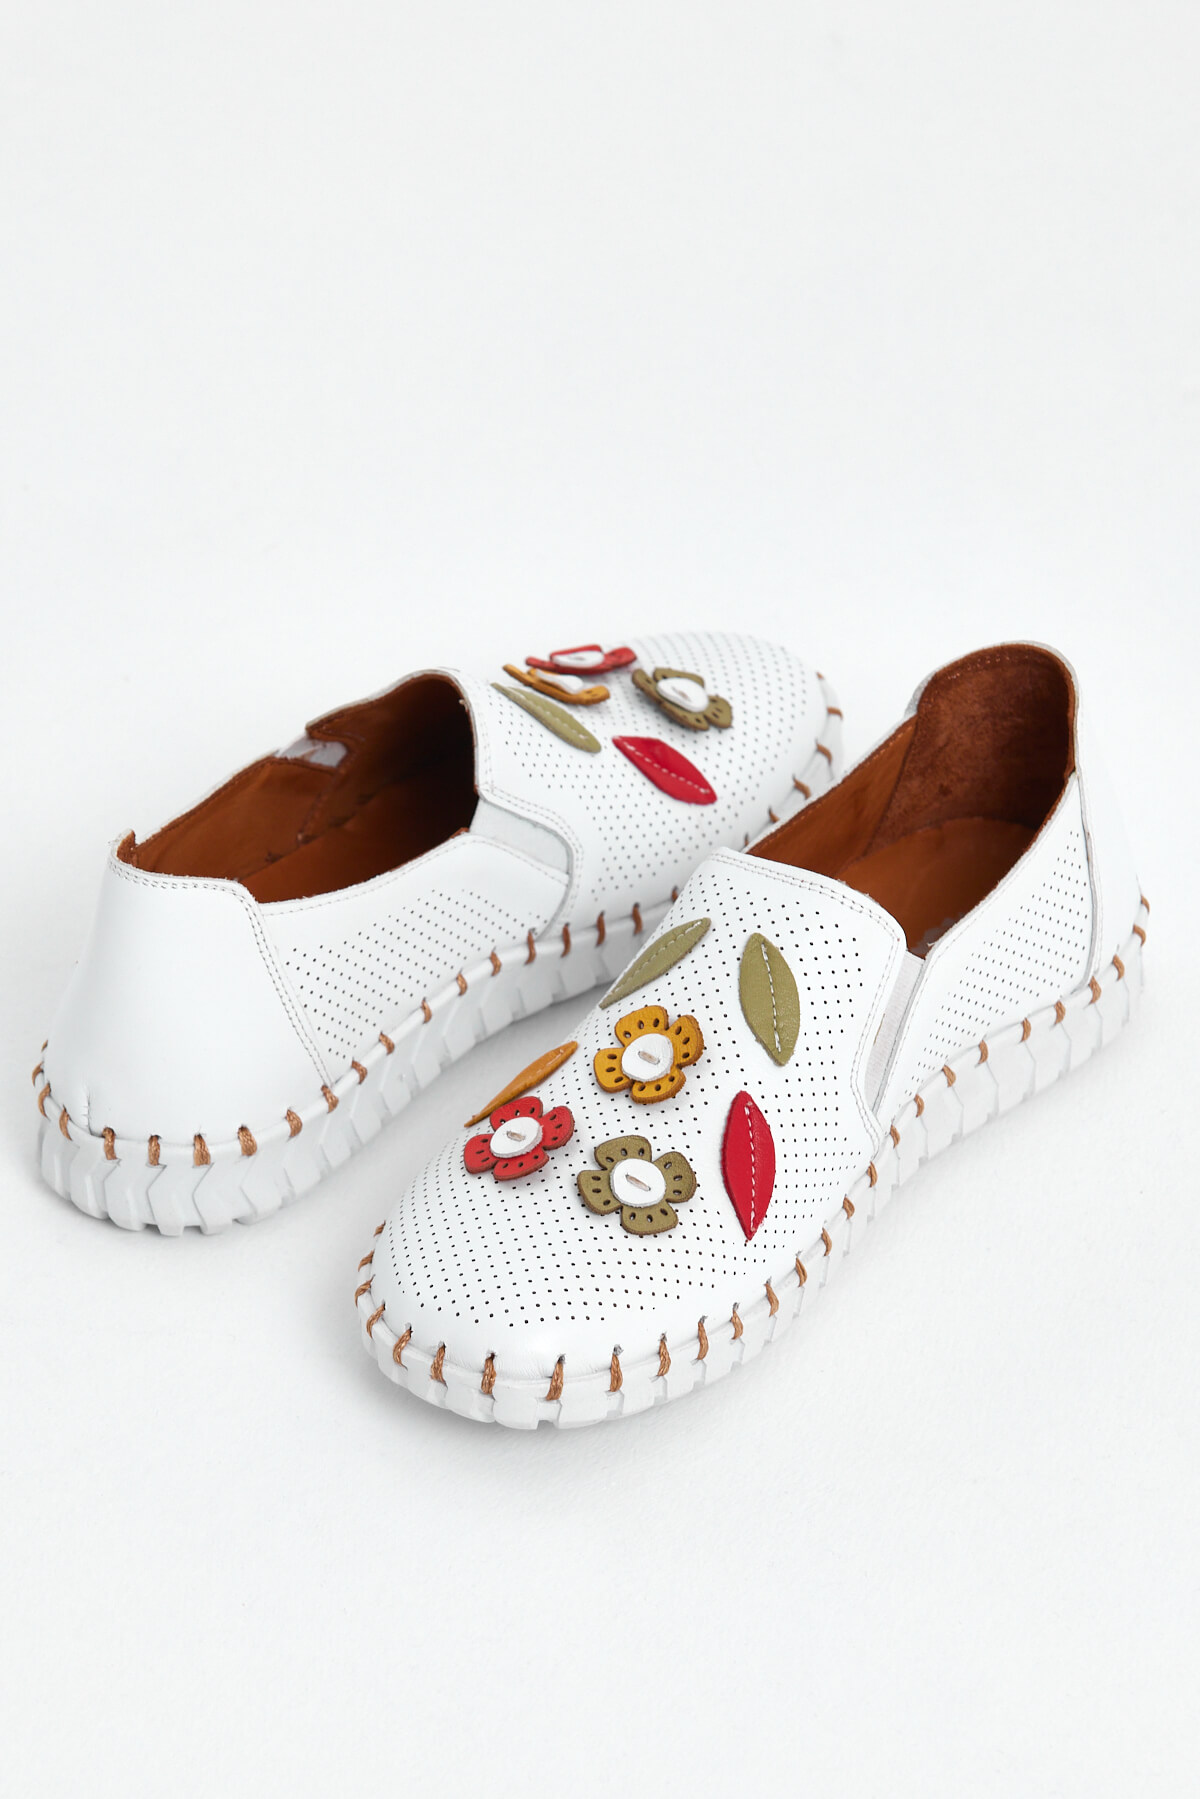 Kadın Comfort Deri Ayakkabı Beyaz 2010719Y - Thumbnail